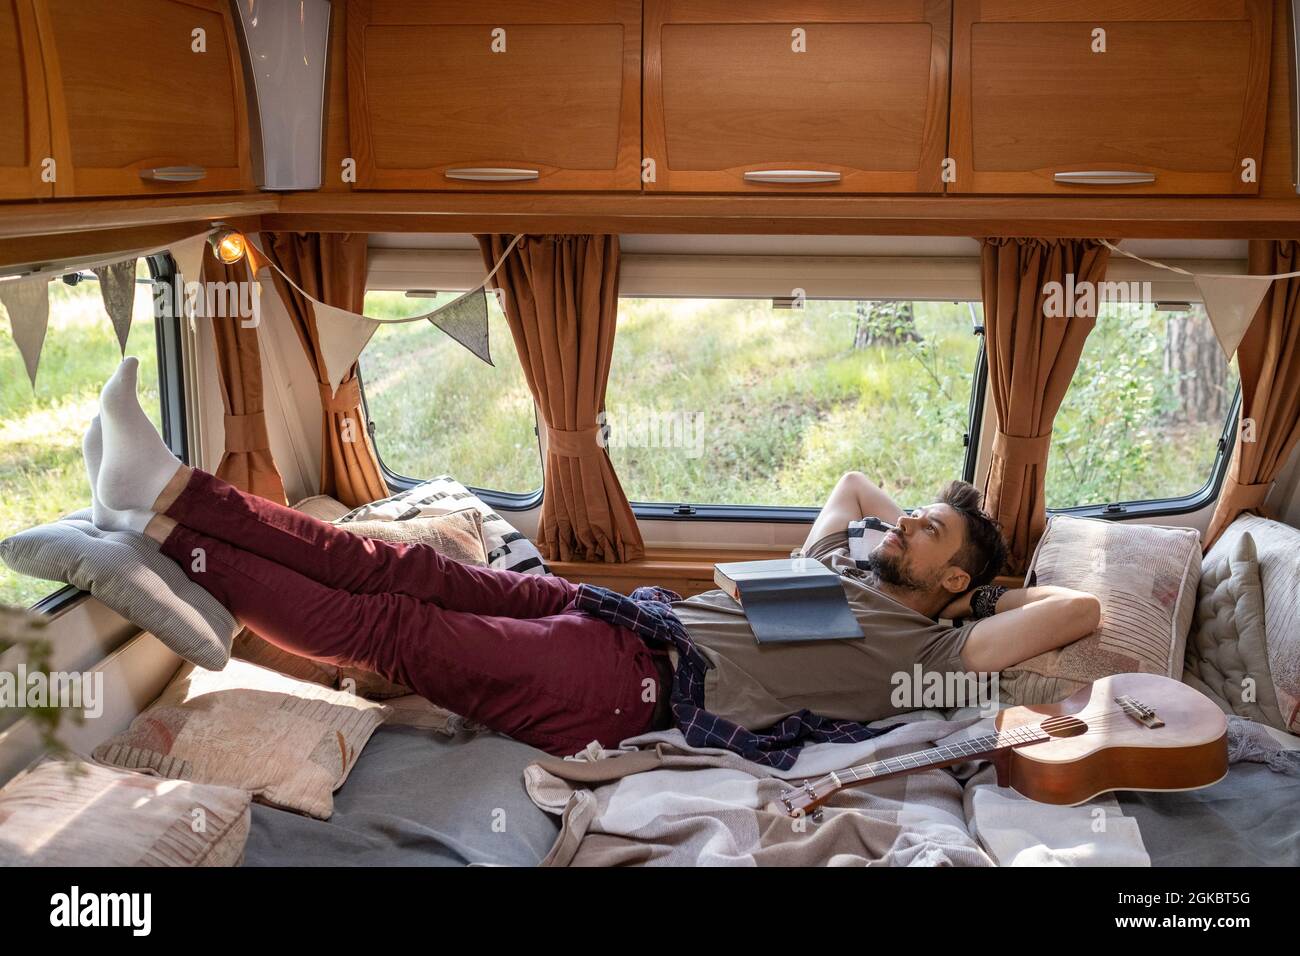 Rilassato giovane uomo con libro aperto sul petto daydreaming sul letto in casa su ruote Foto Stock